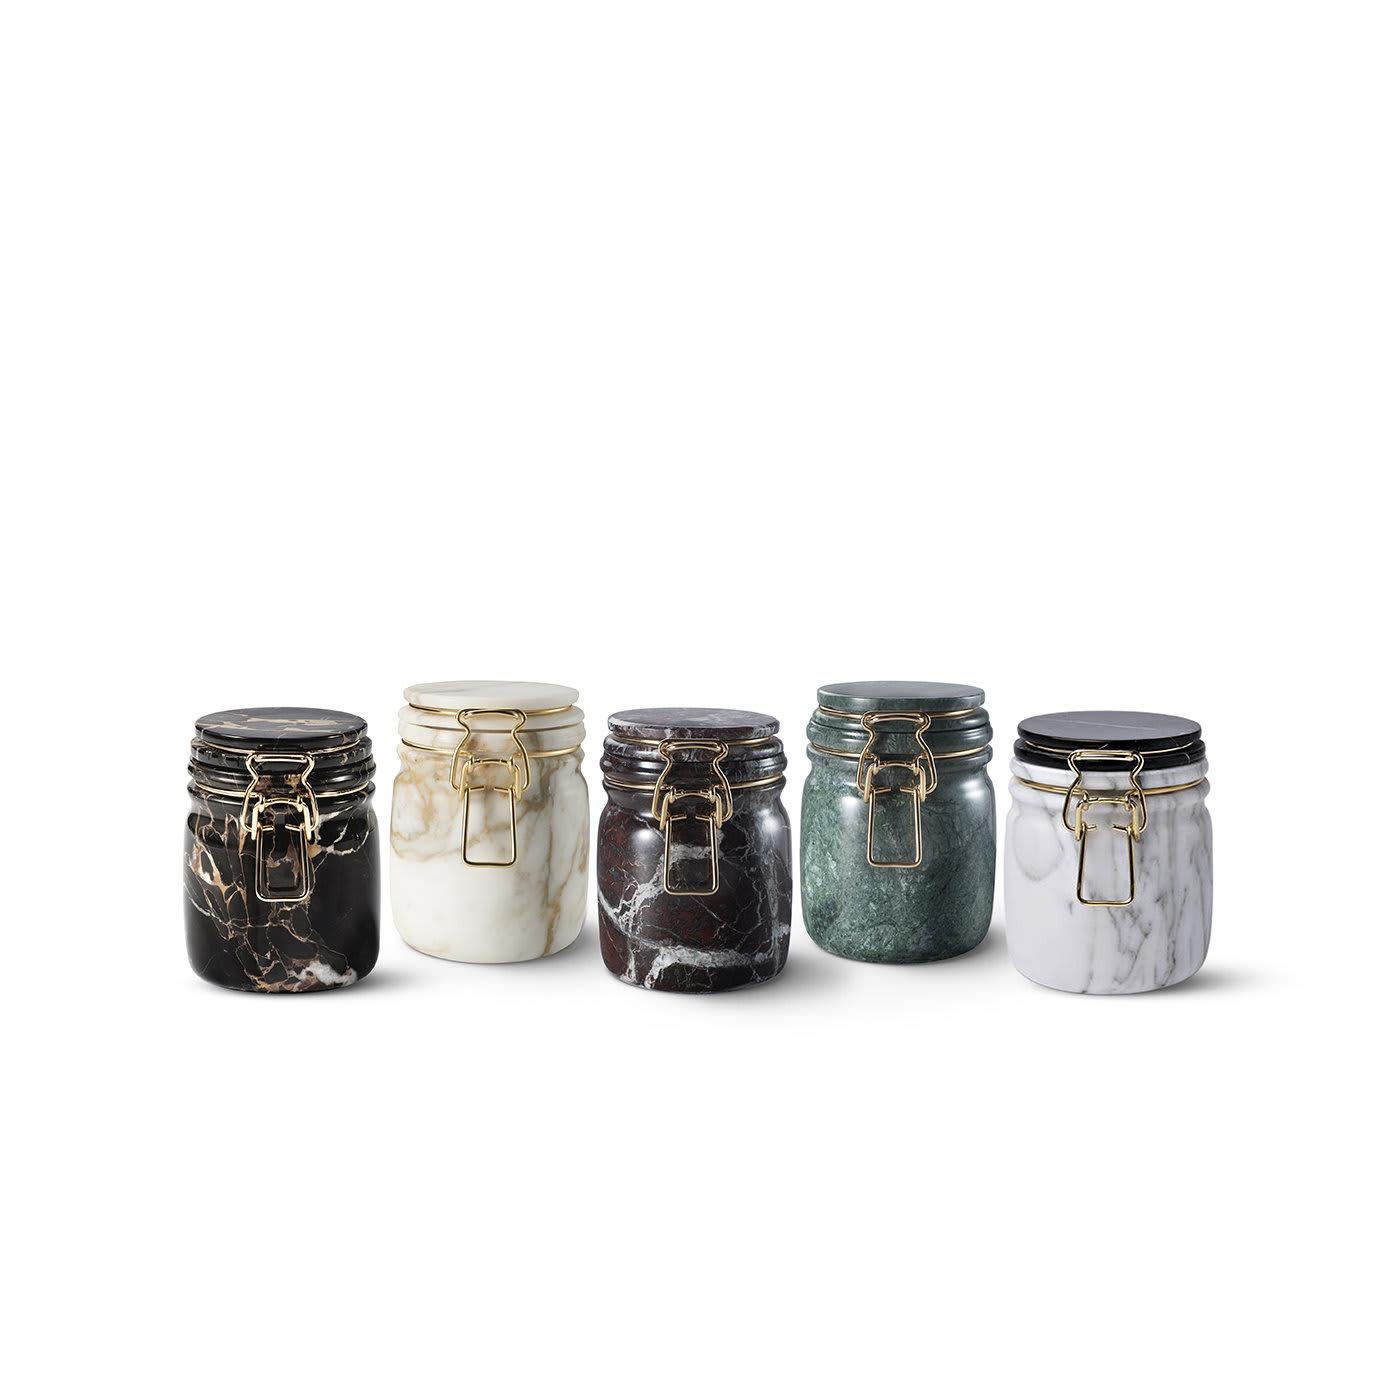 Dieses exquisite Stück ist eine raffinierte und moderne Interpretation des kultigen Marmeladenglases. Er wird nach traditionellen Methoden aus grünem Guatemala-Marmor hergestellt, dessen leuchtend grüner Farbton und einzigartige Adern sowohl den